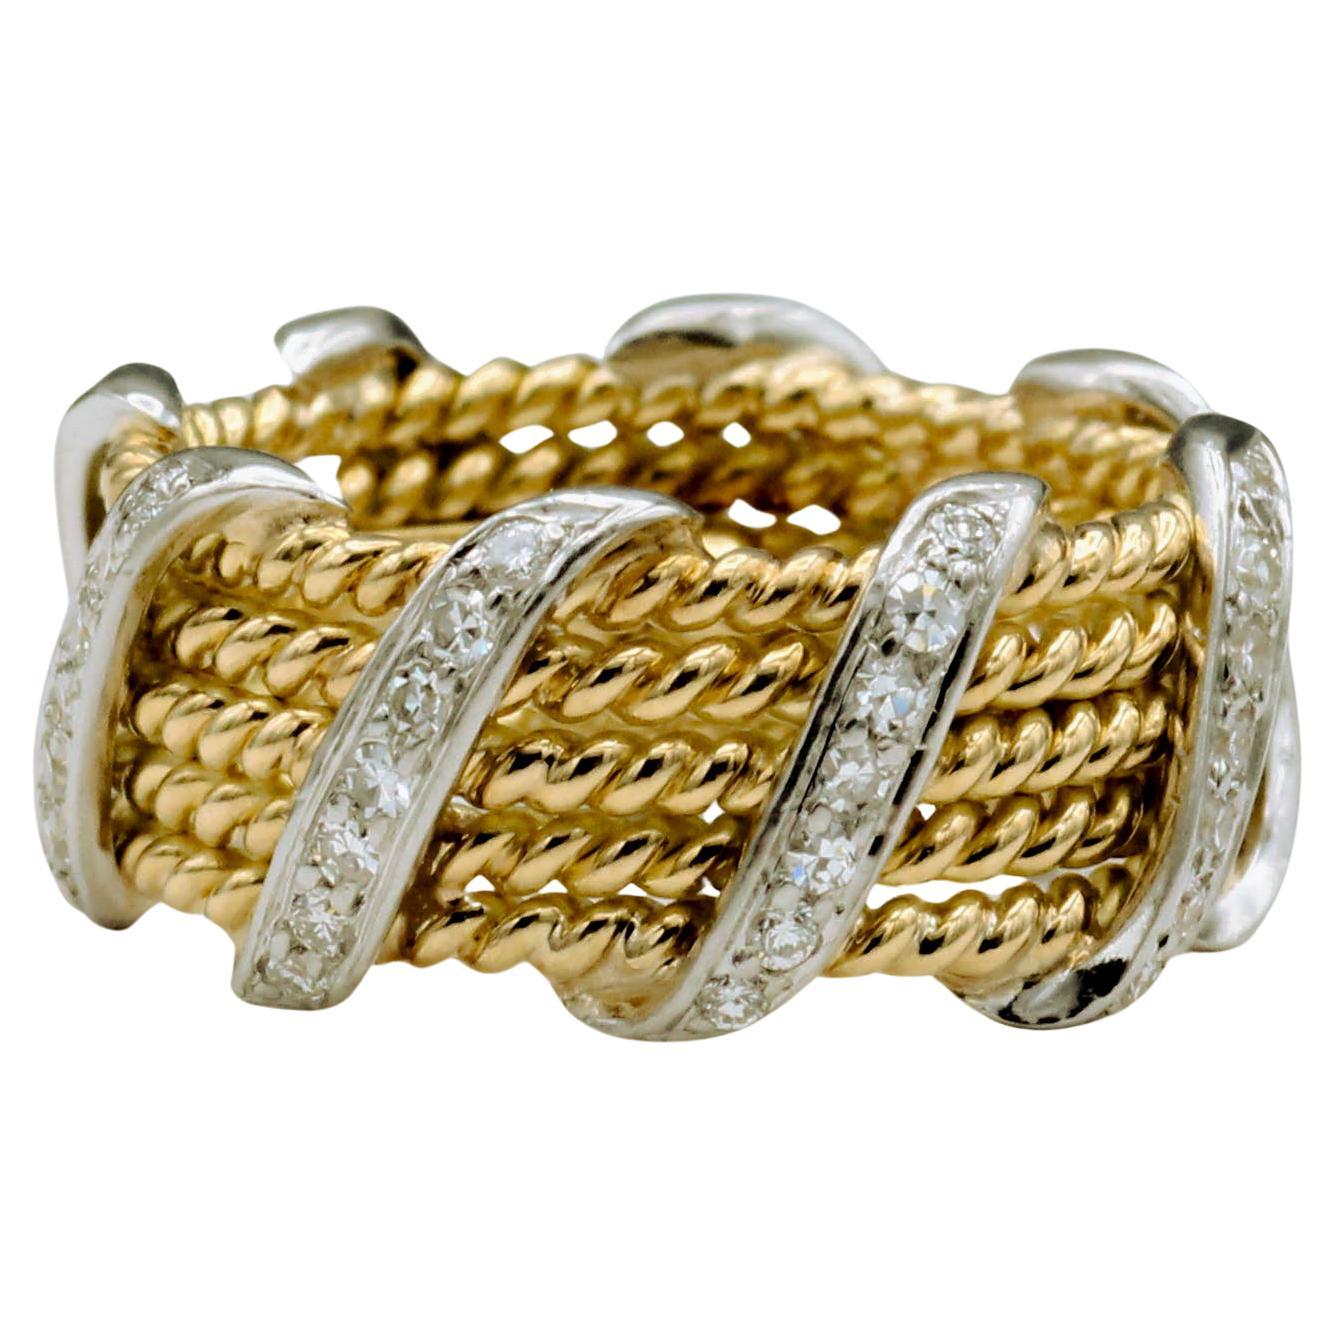 Tiffany & Co. Schlumberger, bague en or jaune 18 carats avec 5 rangées de diamants, taille 5,5